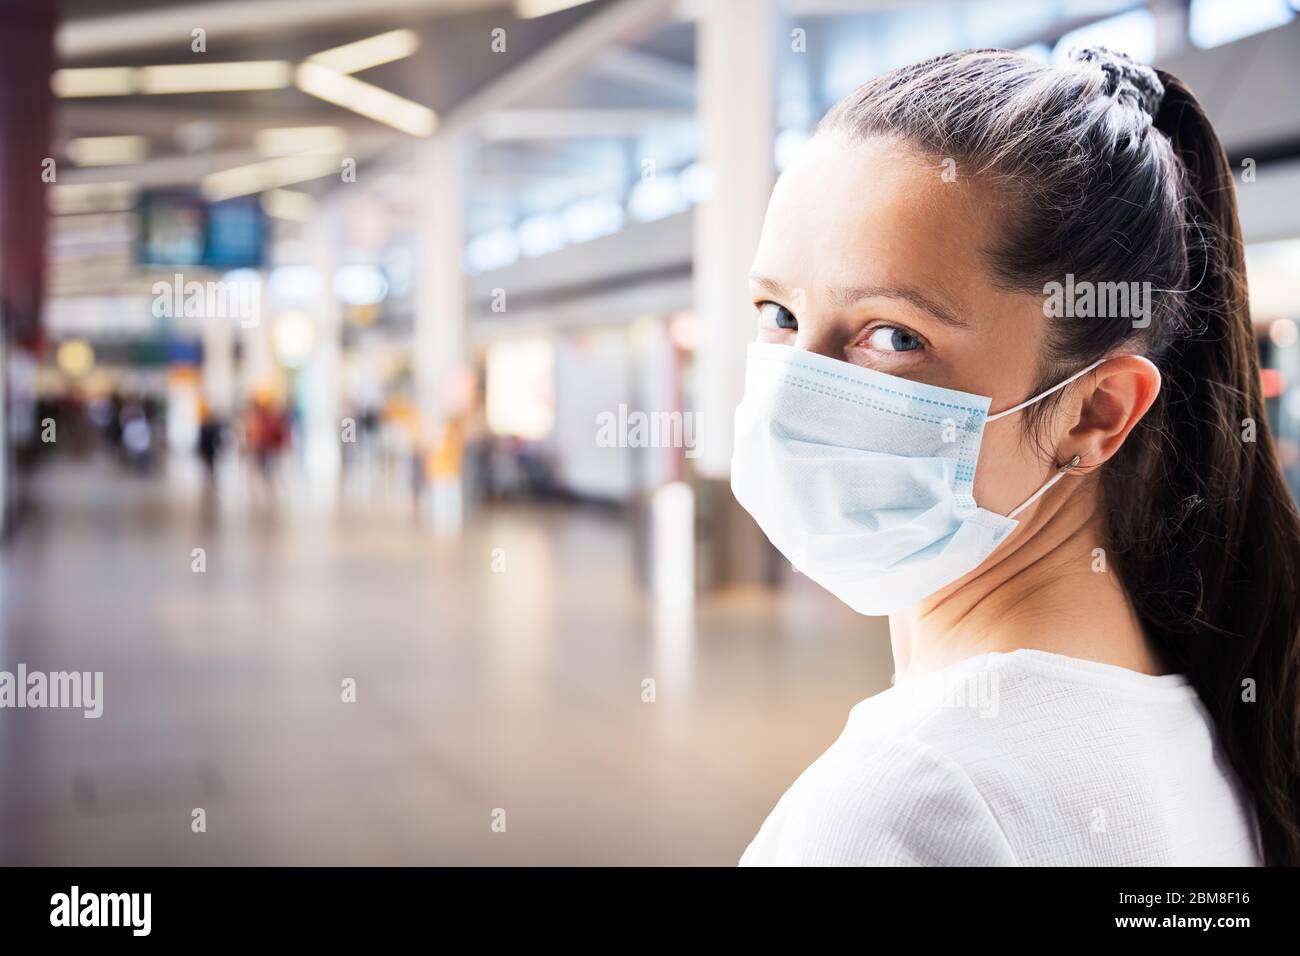 Femme en masque facial au terminal de l'aéroport en voyage Banque D'Images